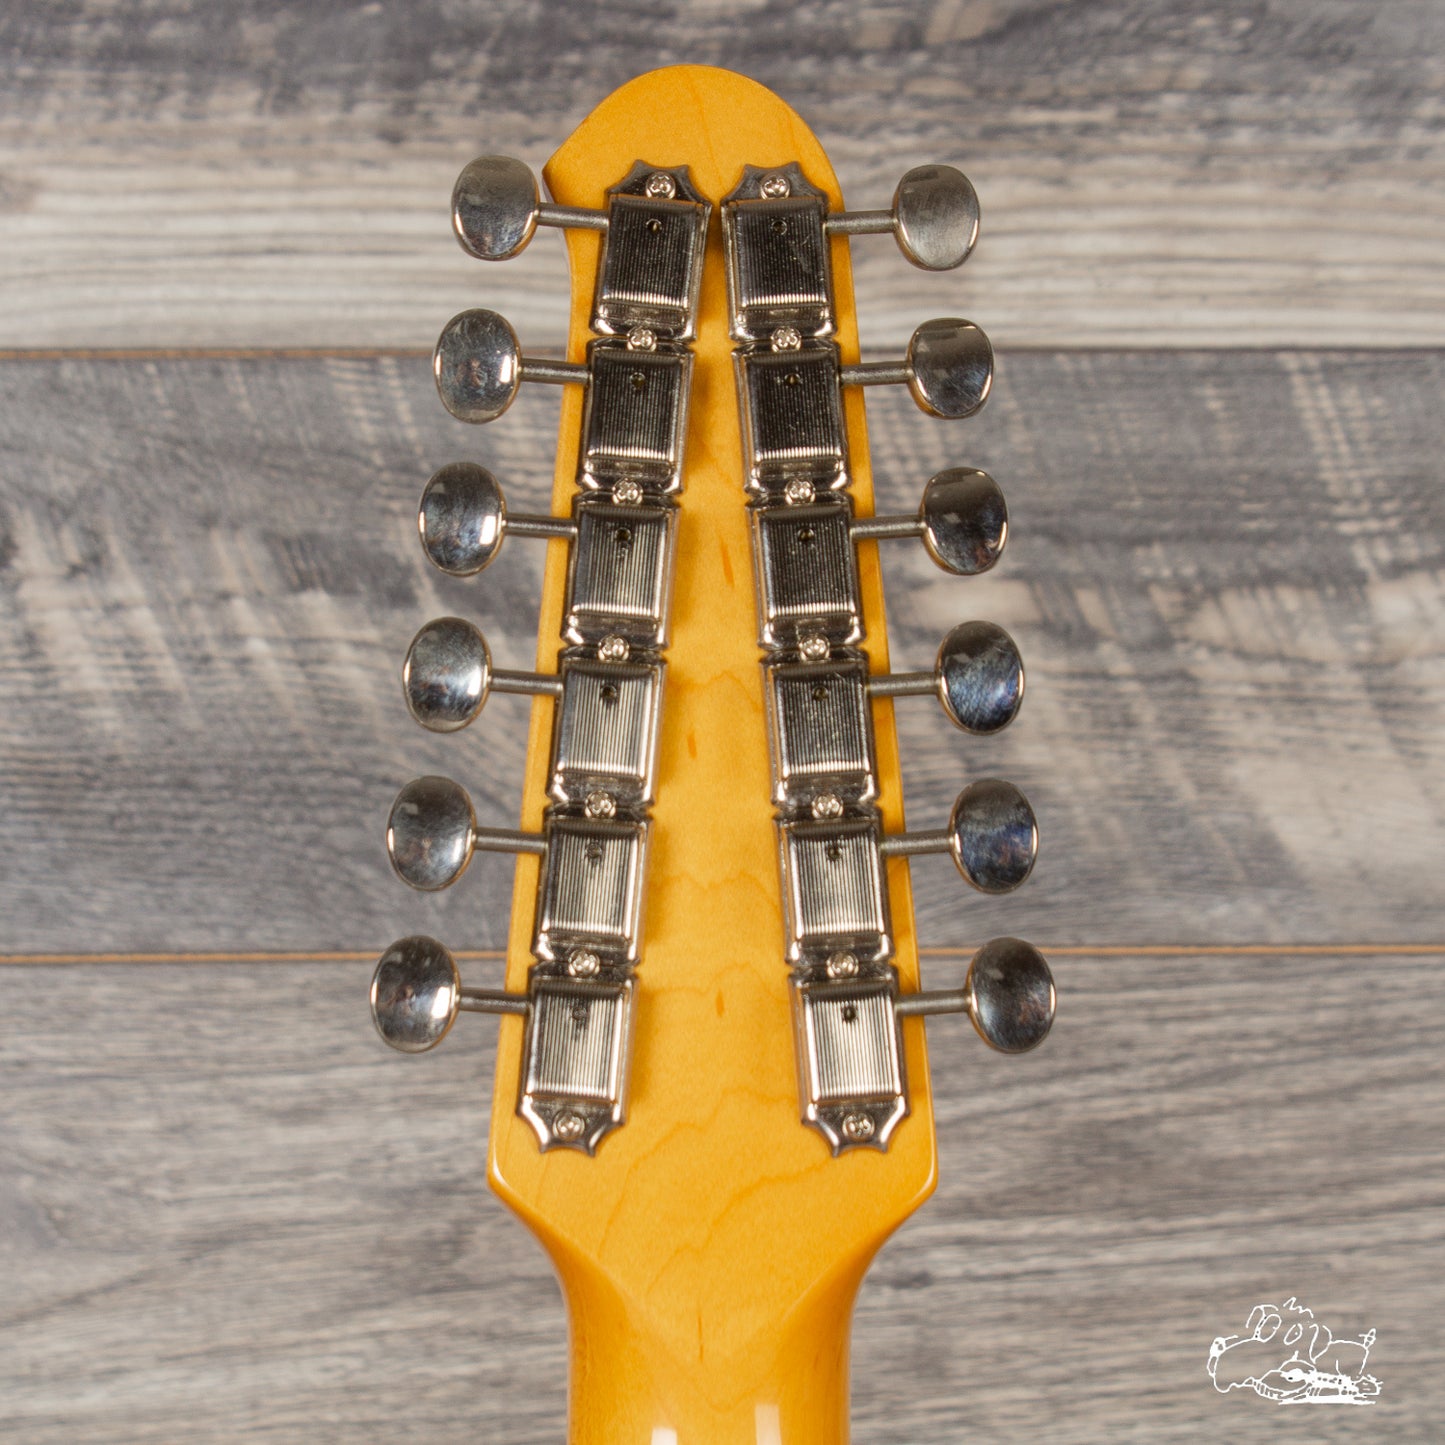 2003 Fender 12-String Stratocaster